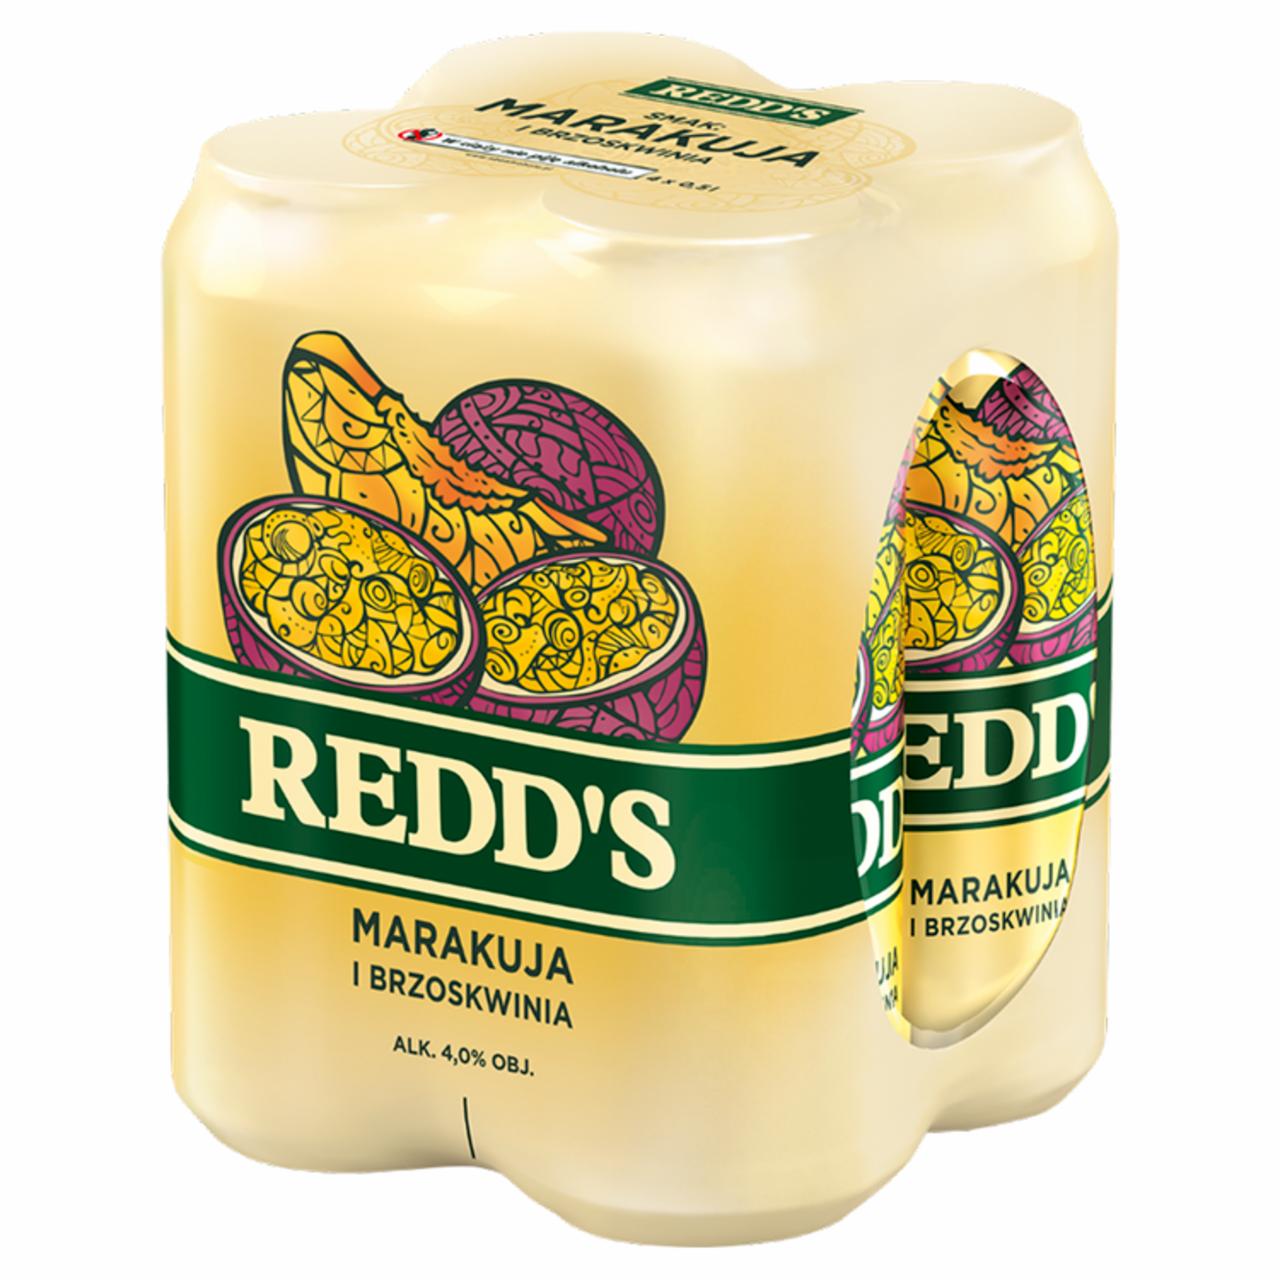 Zdjęcia - Redd's Piwo smak marakuja i brzoskwinia 4 x 0,5 l